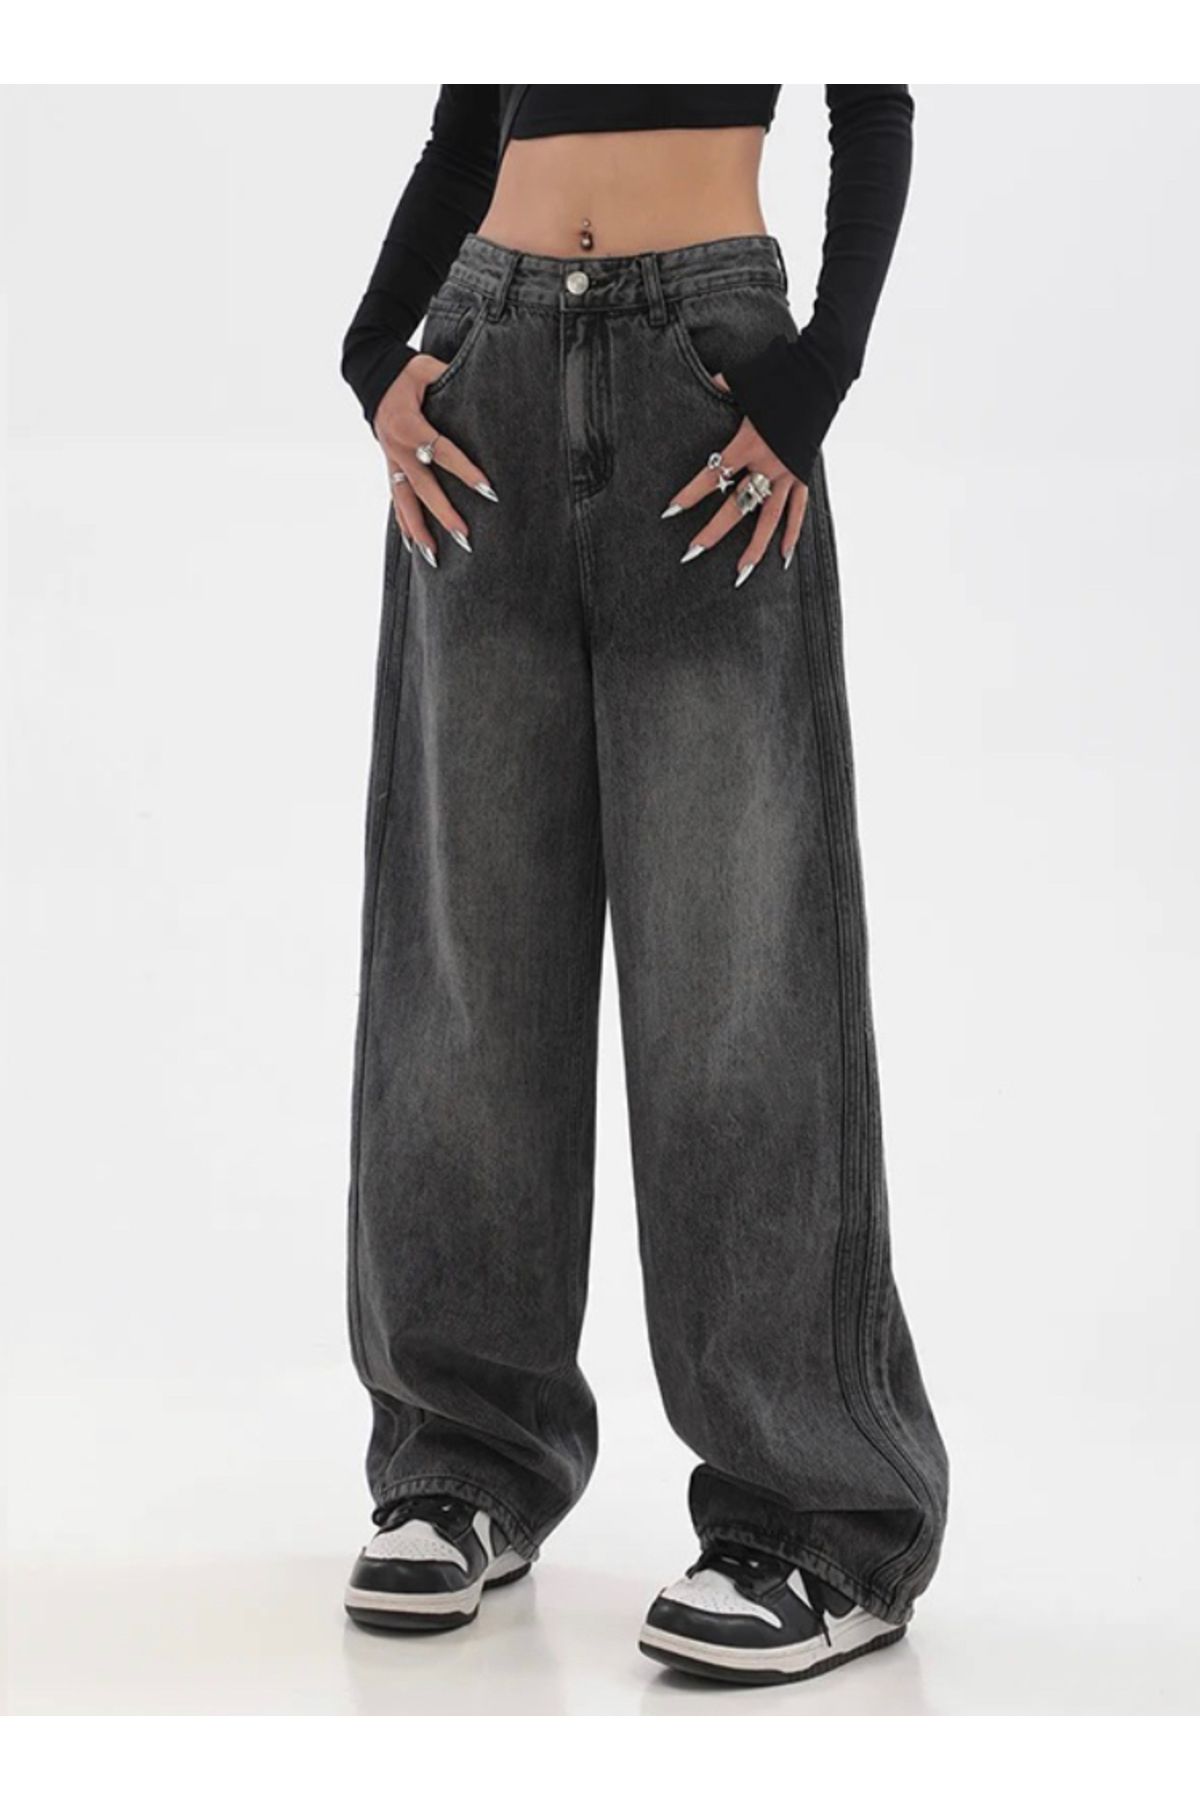 Köstebek Siyah Yıkamalı Baggy Jean Denim Pantolon